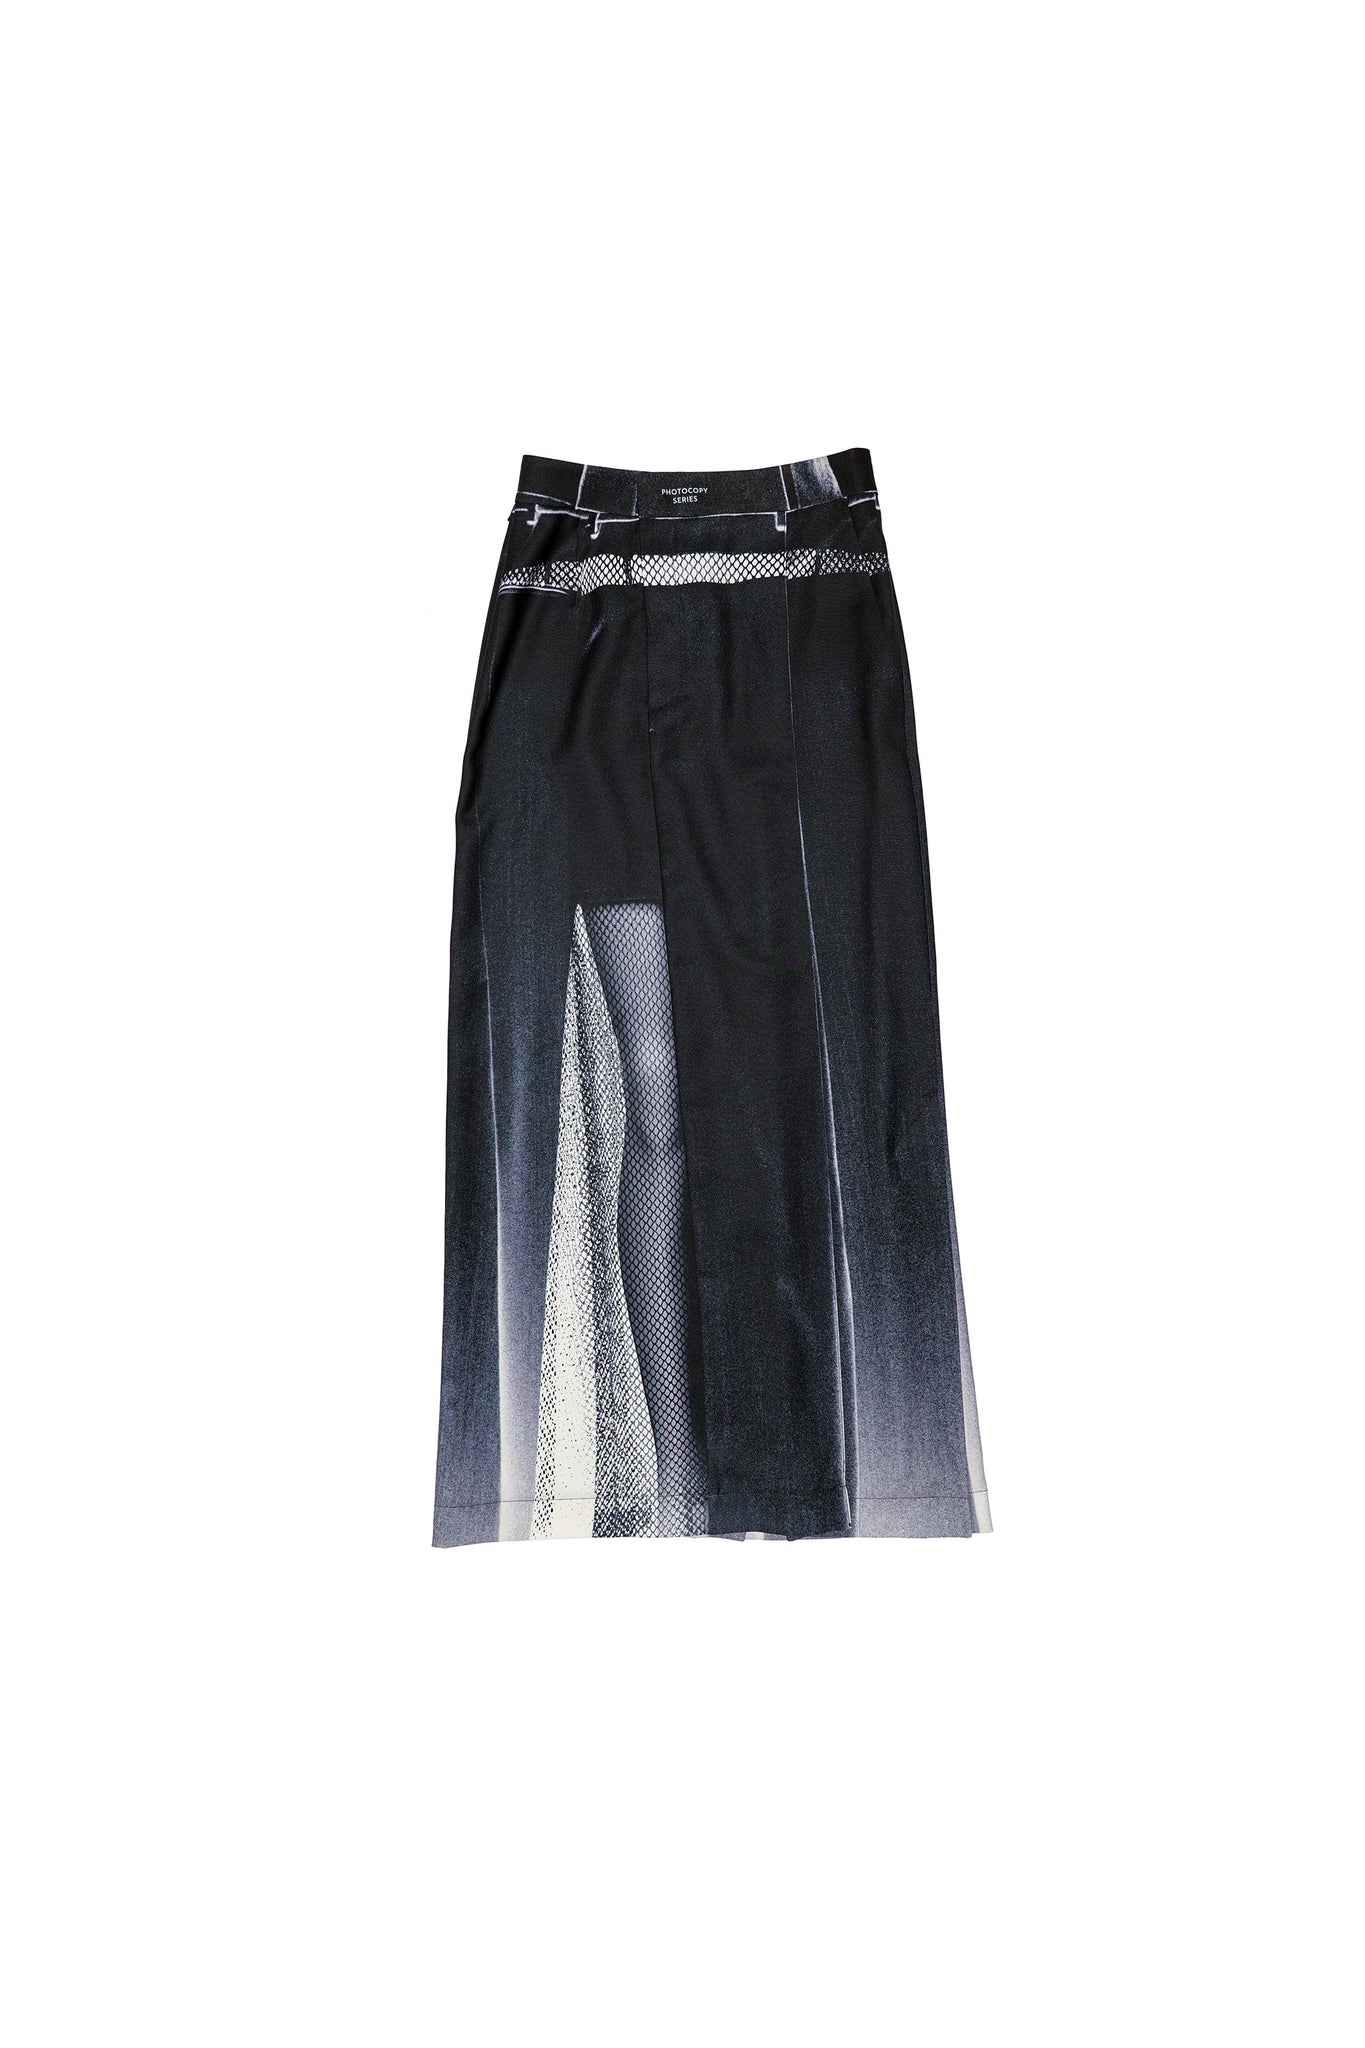 Black Photocopy Series Skirt